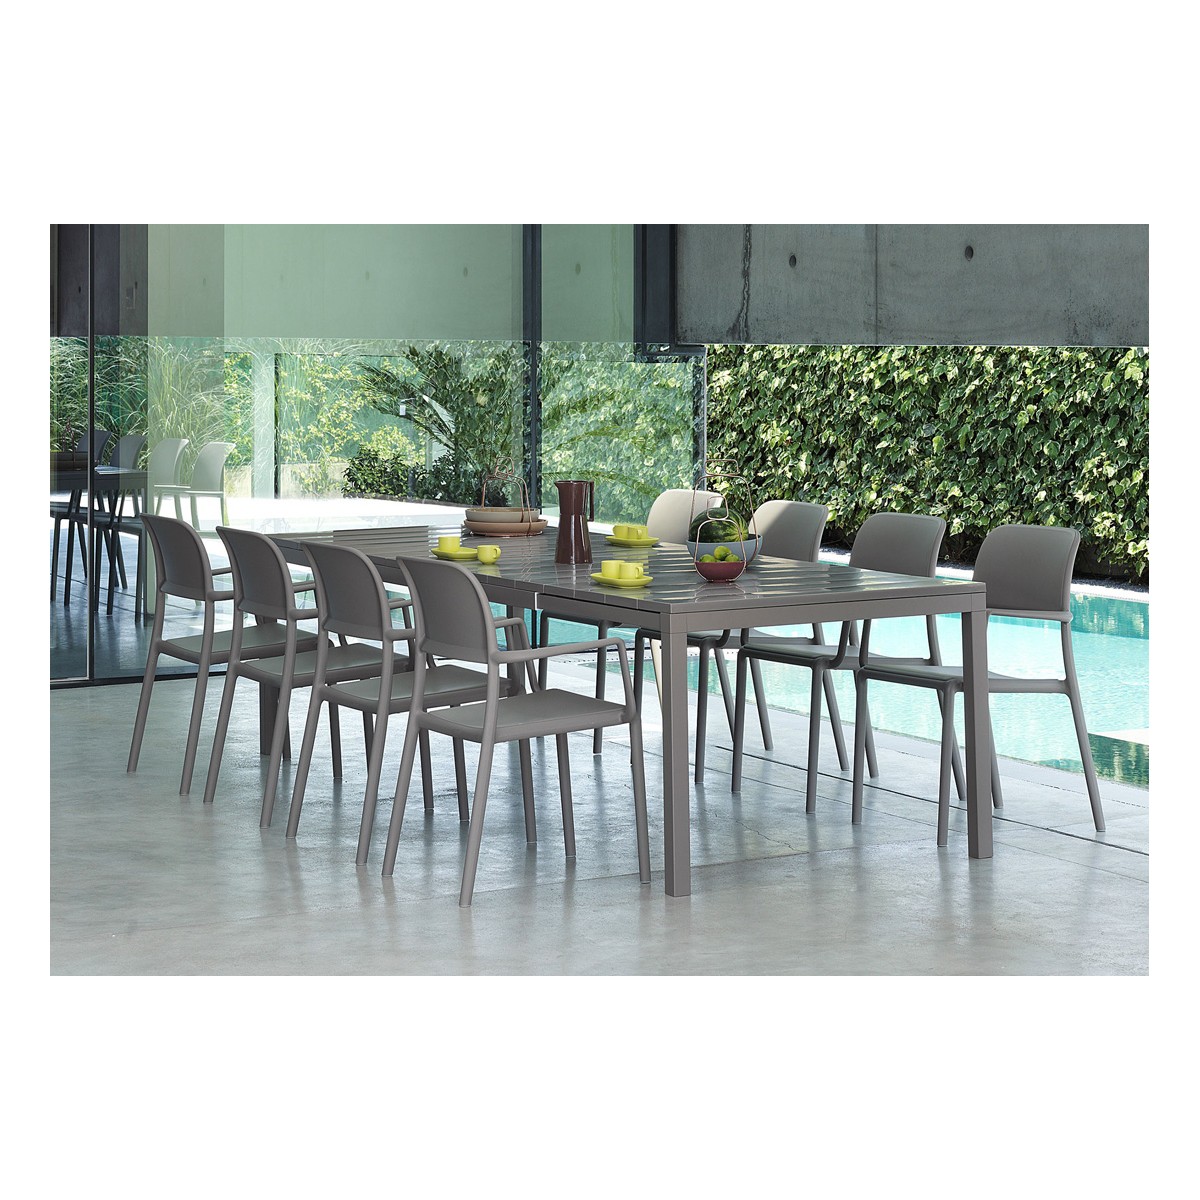 Set tavolo Rio 210 colore tortora allungato misura 100 x 280 x h76 con 8 sedie Riva